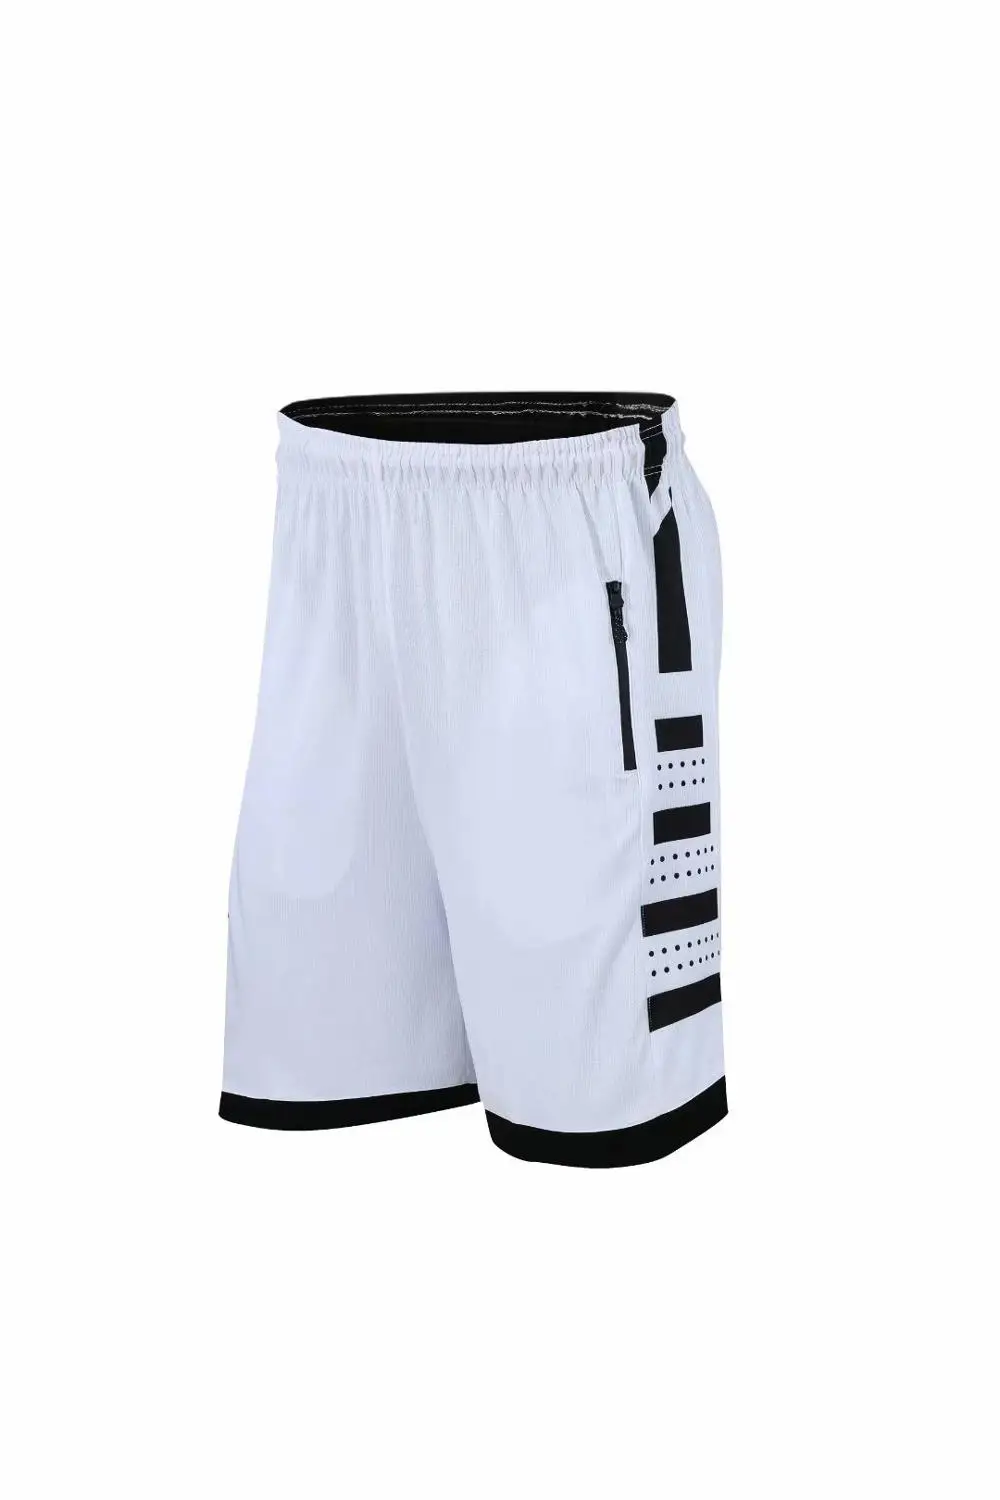 Для мужчин Фитнес сжатия Спортивные шорты пропускающие воздух беговые для улицы спортивные мужские шорты для занятия баскетболом свободные пляжные шорты с карманом - Цвет: 305 white